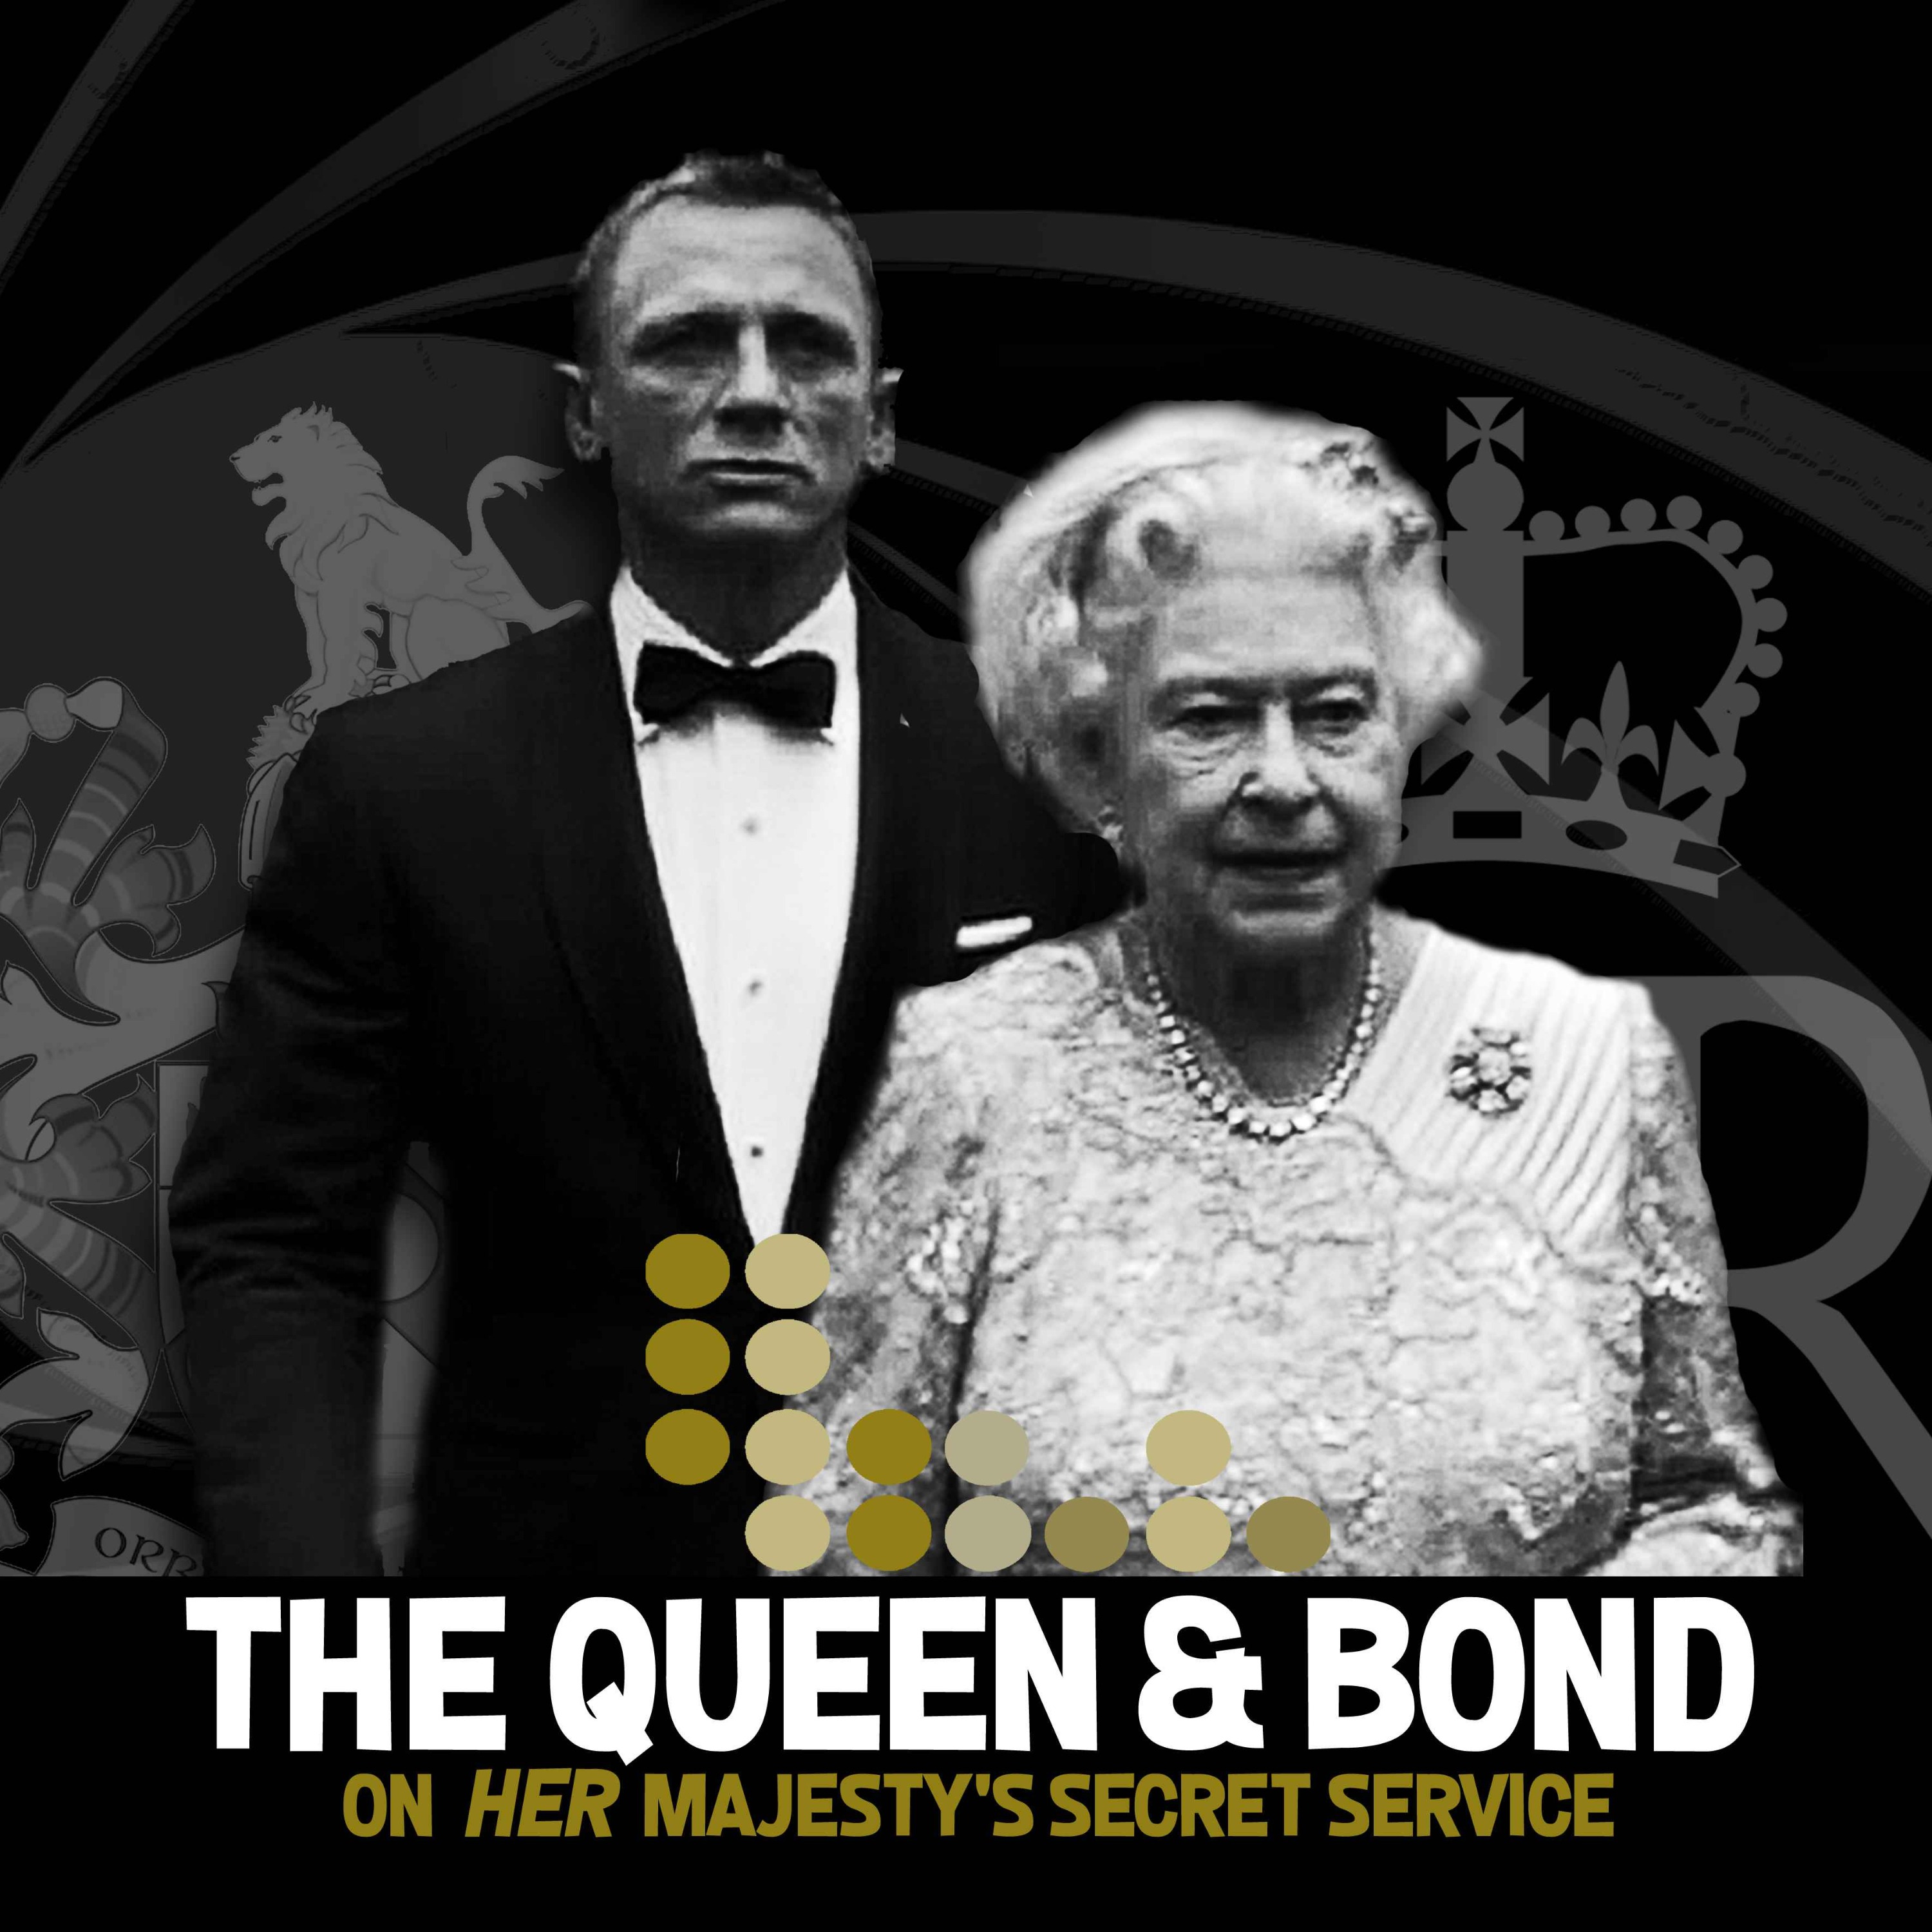 The Queen & Bond